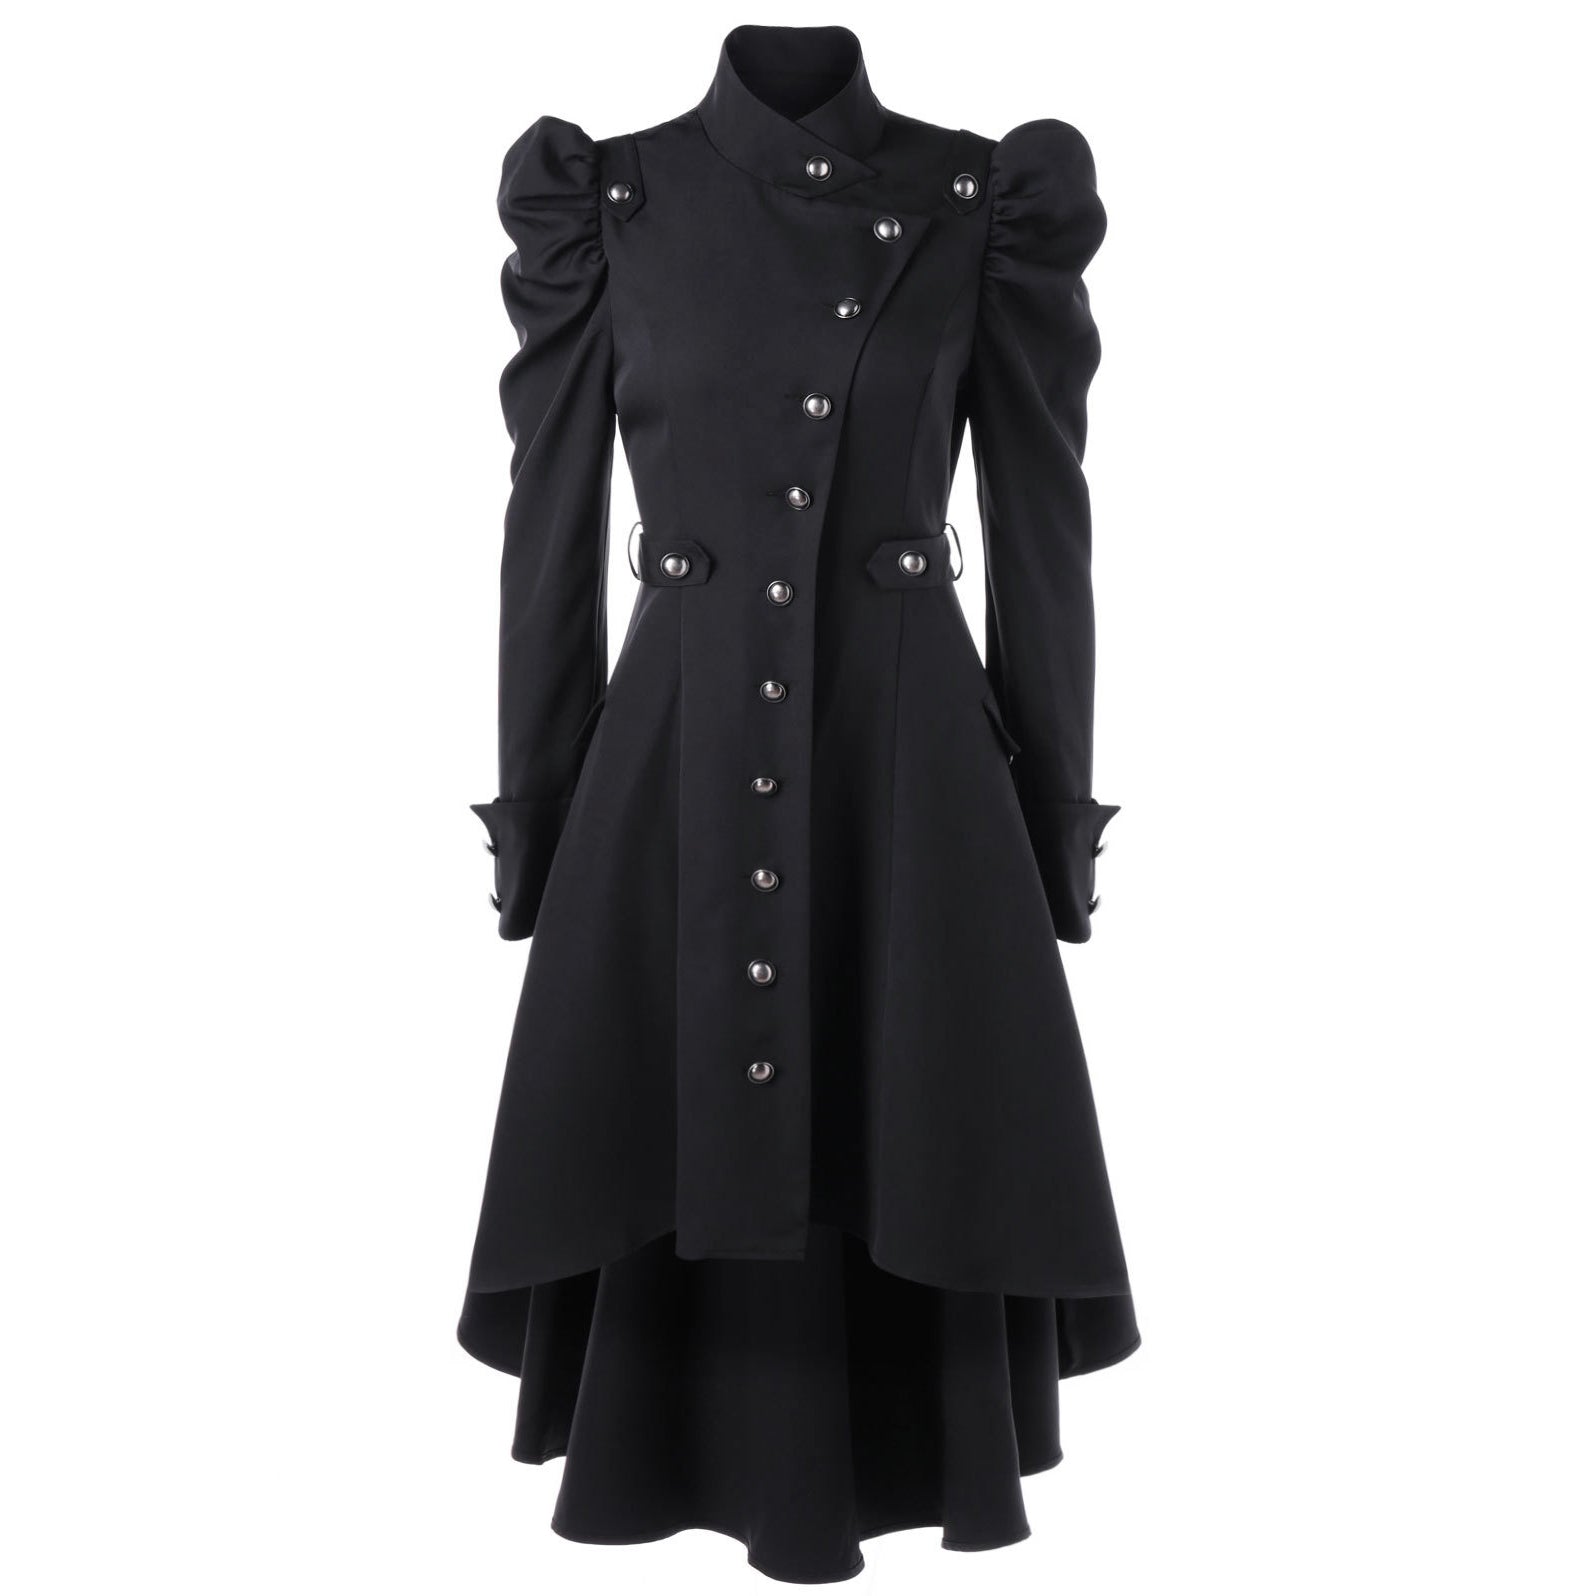 British Style Stand Collar Women Oversized Irregular Coat